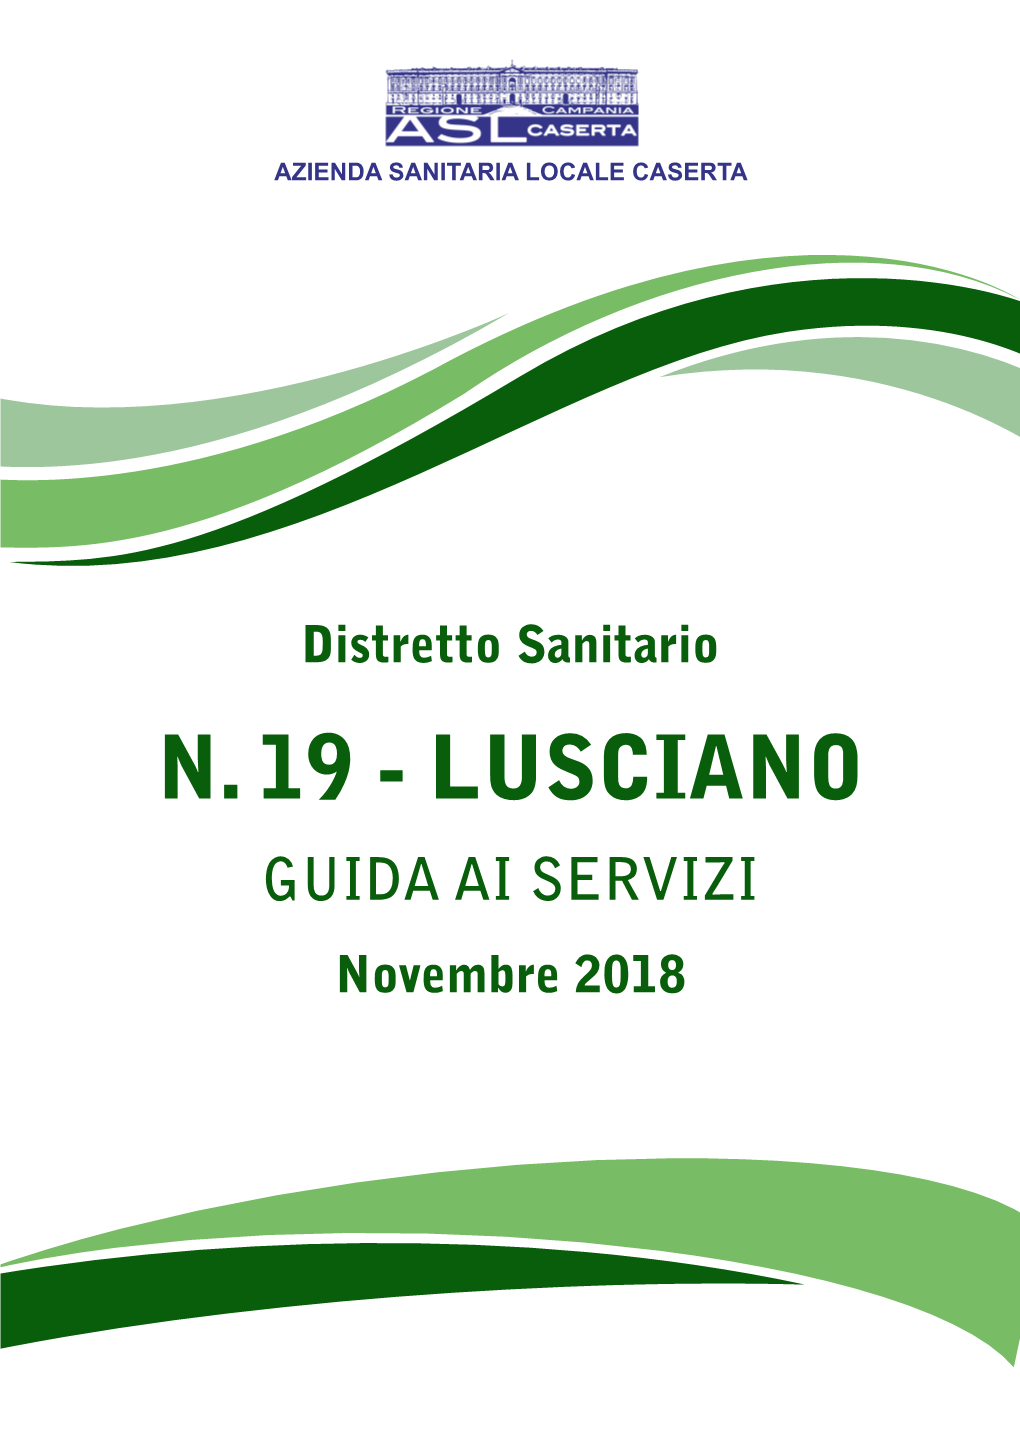 LUSCIANO GUIDA AI SERVIZI Novembre 2018